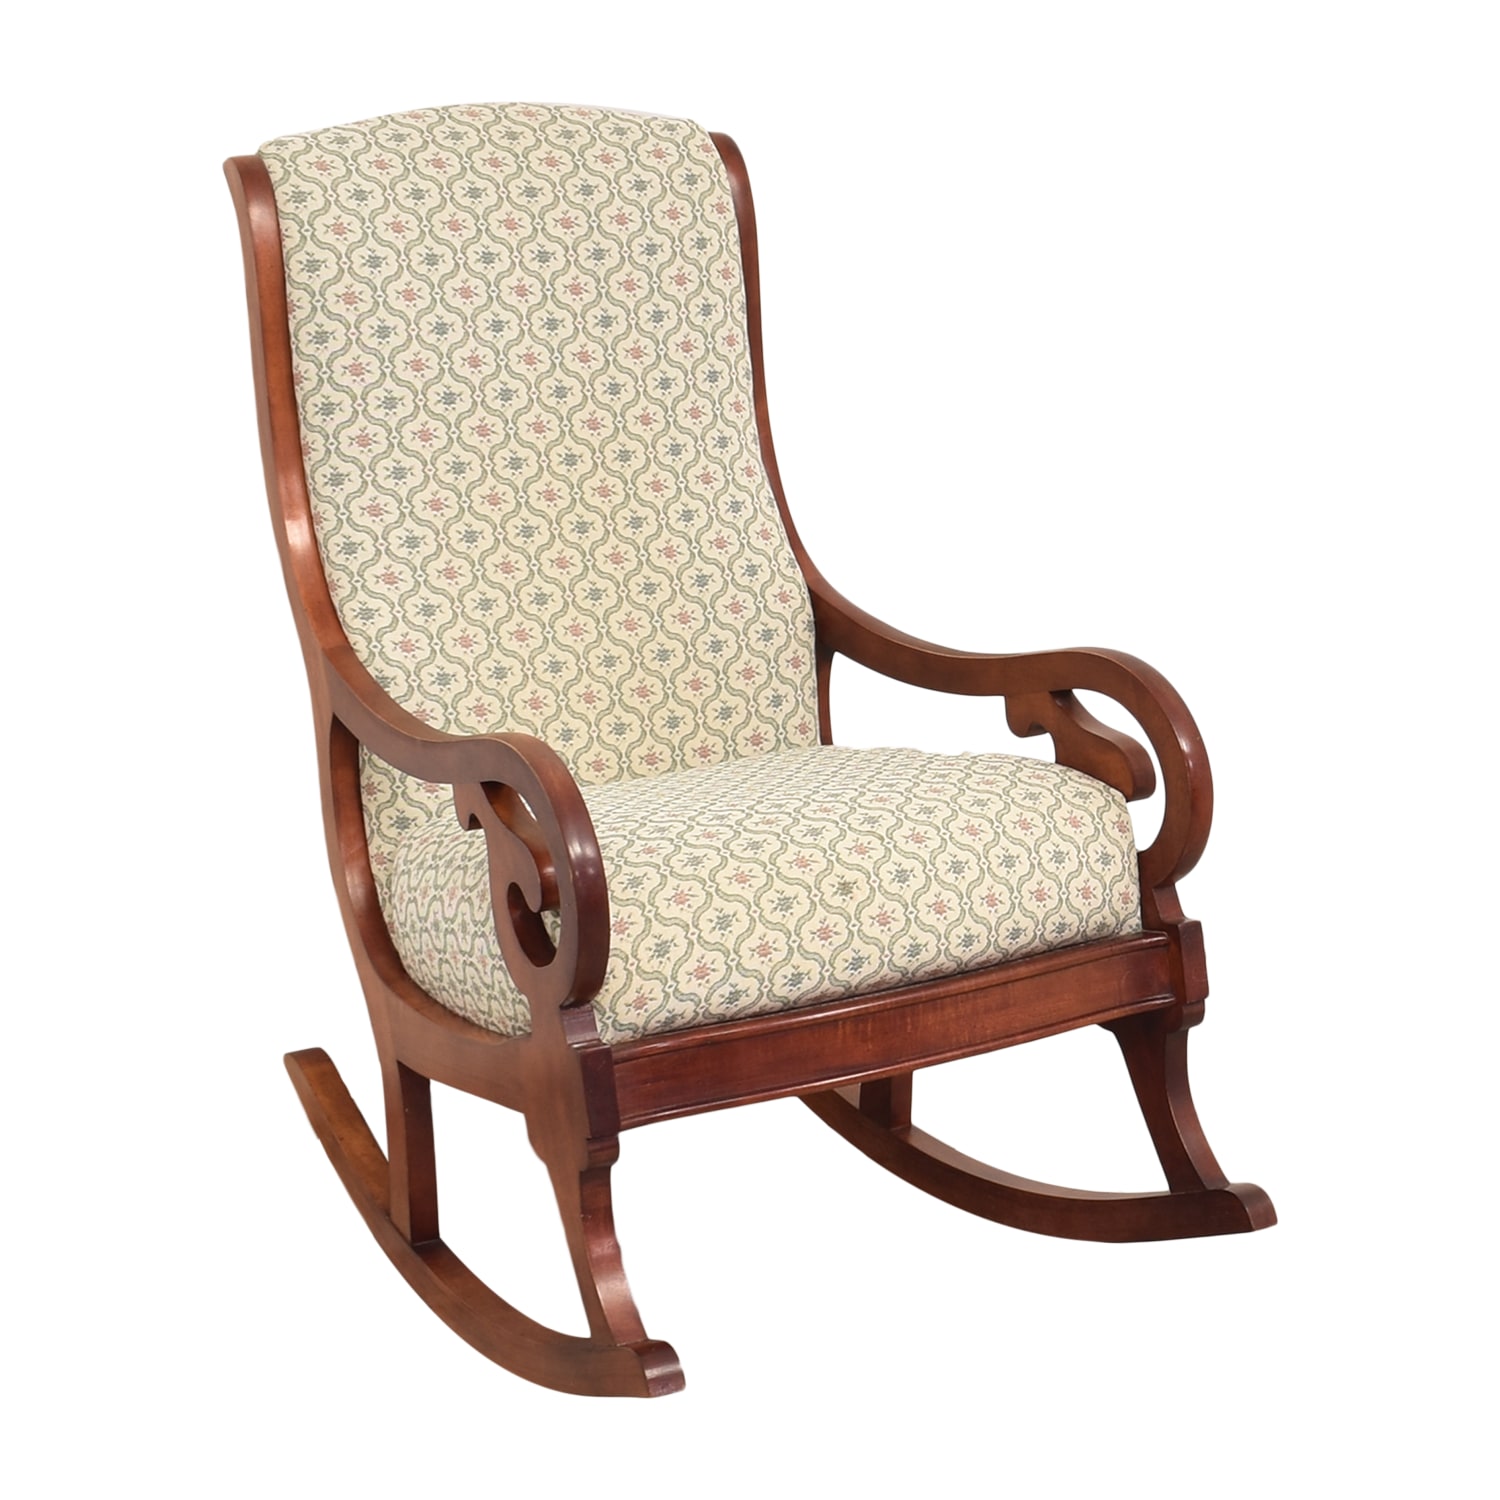 4-Vintage 70's MECO Shagalicious Plaid Upholstered Cushion